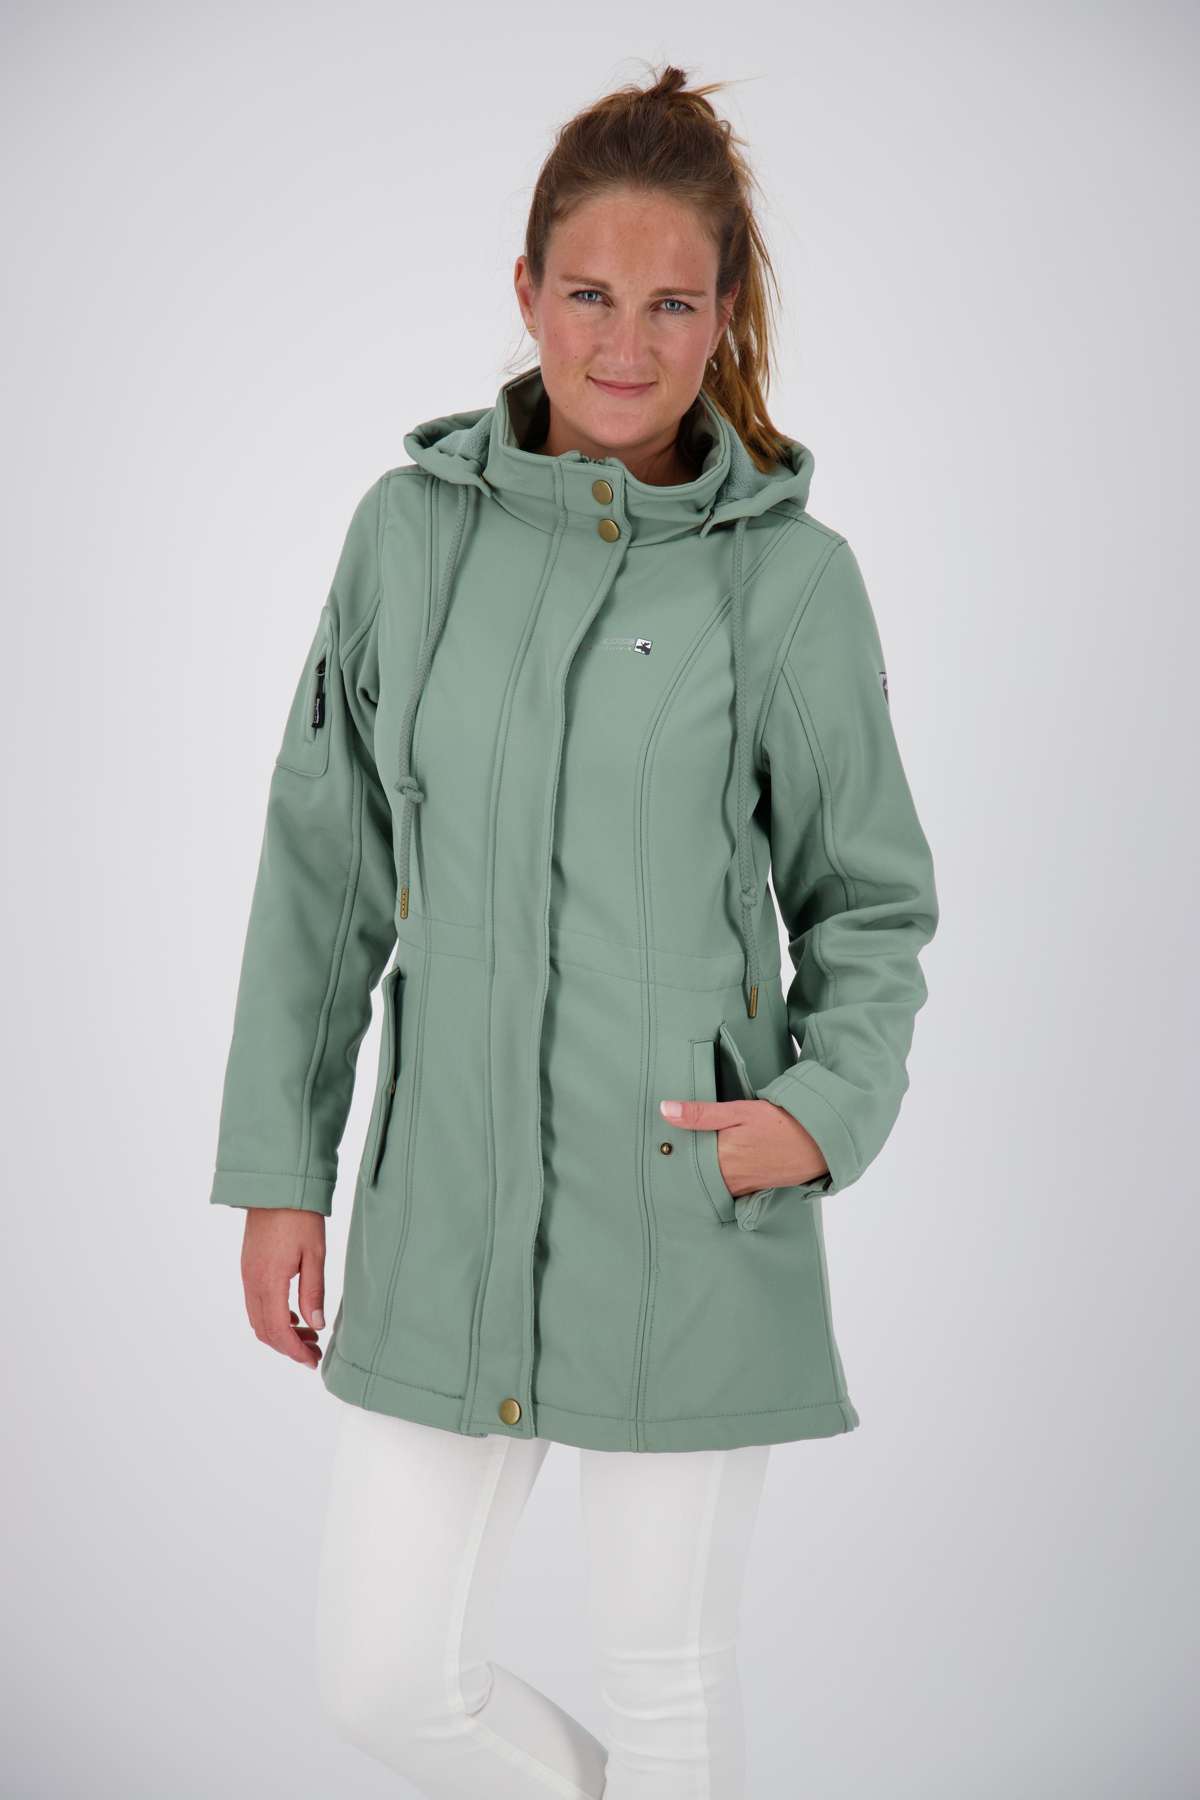 Пальто из софтшелла TWIN PEAK II SLATE NEW WOMEN также доступно в больших размерах.